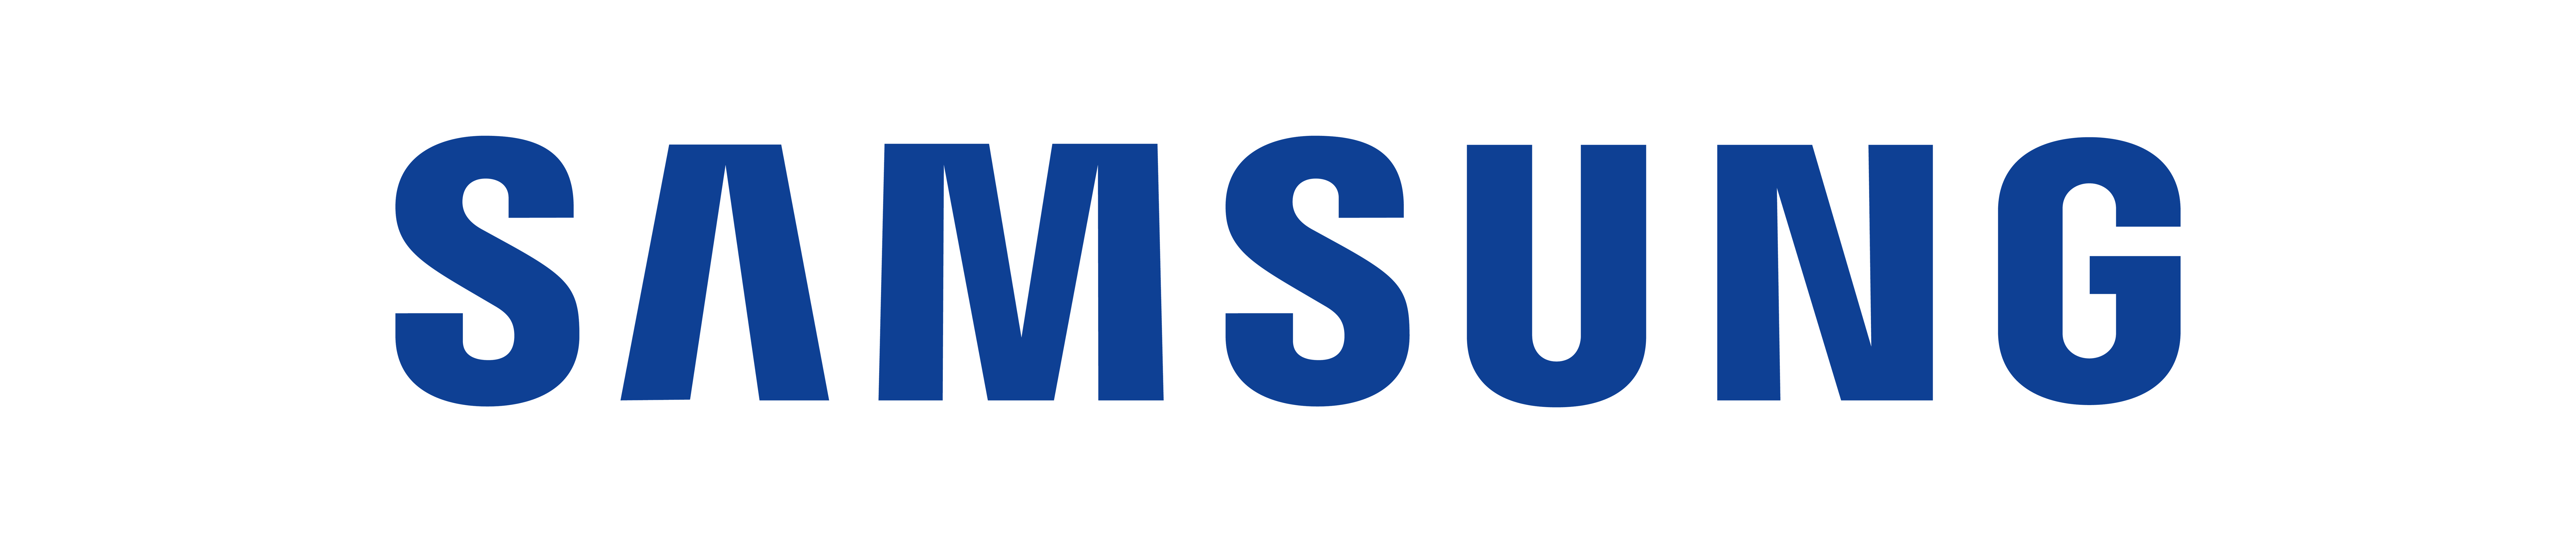 Samsung Mobile Logo - Samsung Mobile Logo Png Images